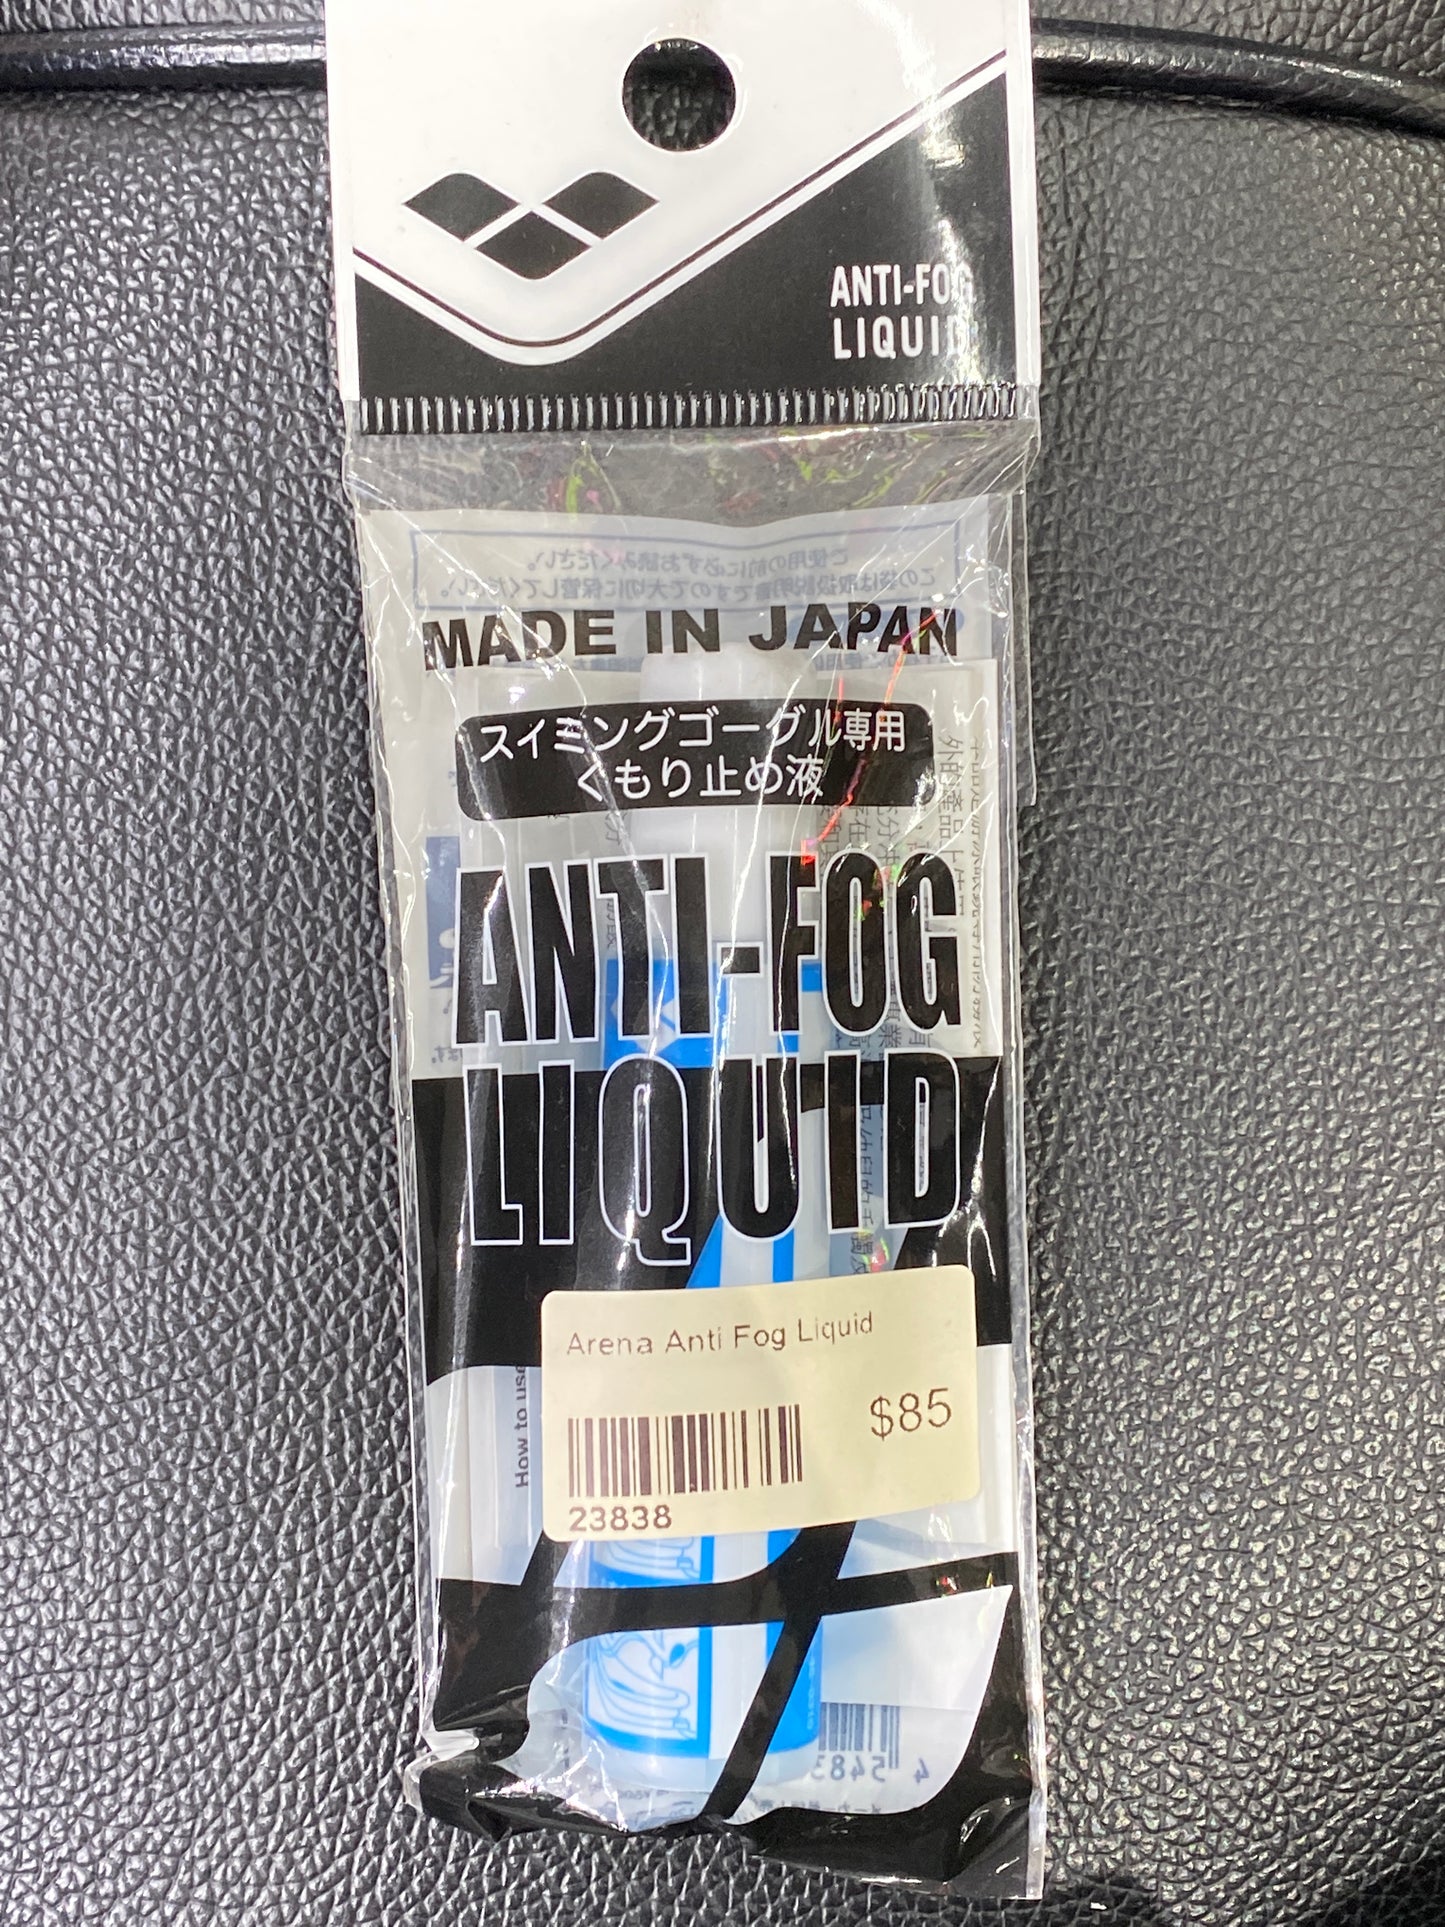 Arena Anti Fog Liquid